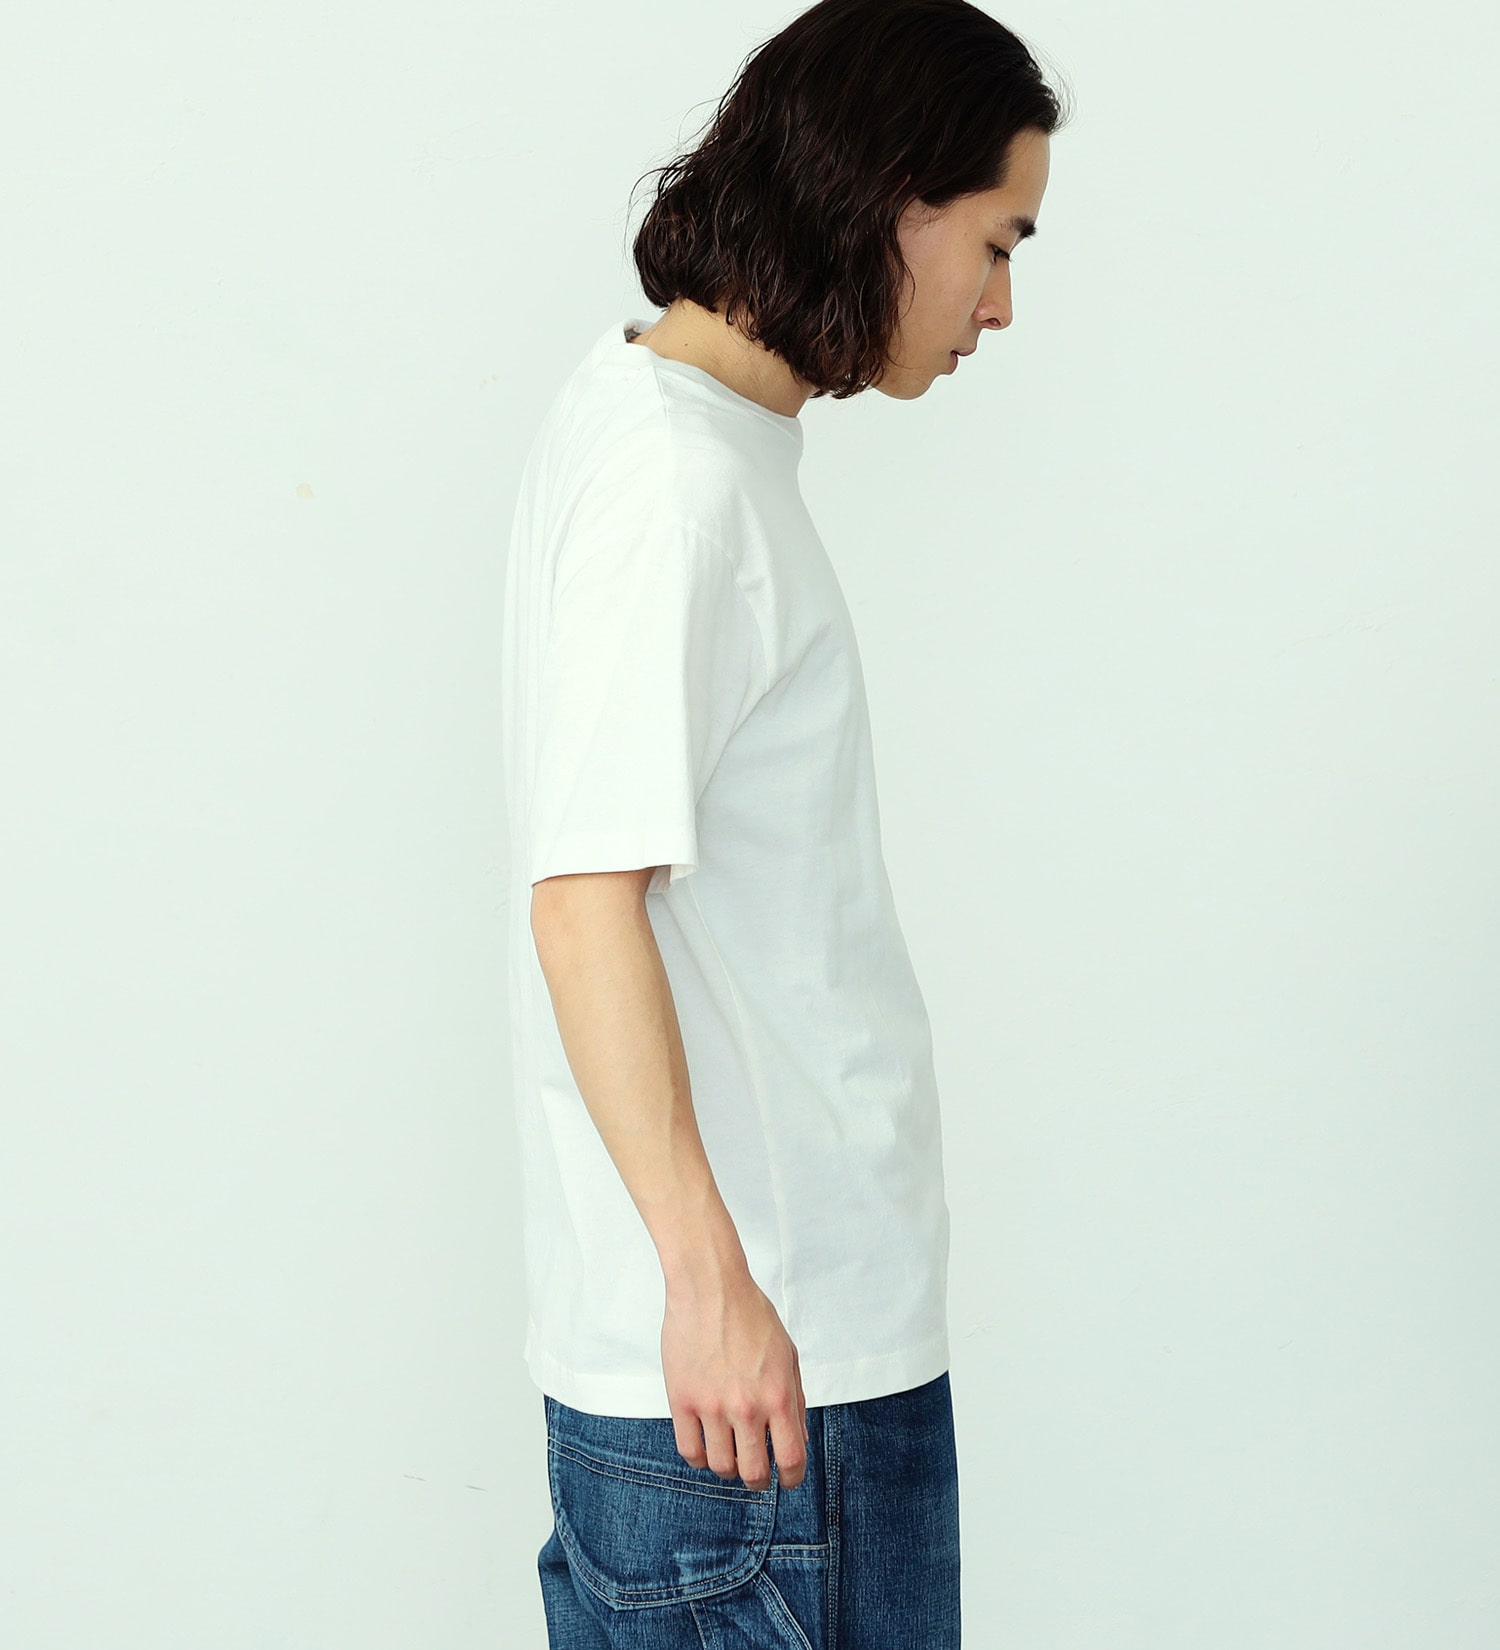 ALPHA(アルファ)のAマークロゴプリントTシャツ 半袖 (ブラウンフロッグスキンカモ)|トップス/Tシャツ/カットソー/メンズ|ホワイト